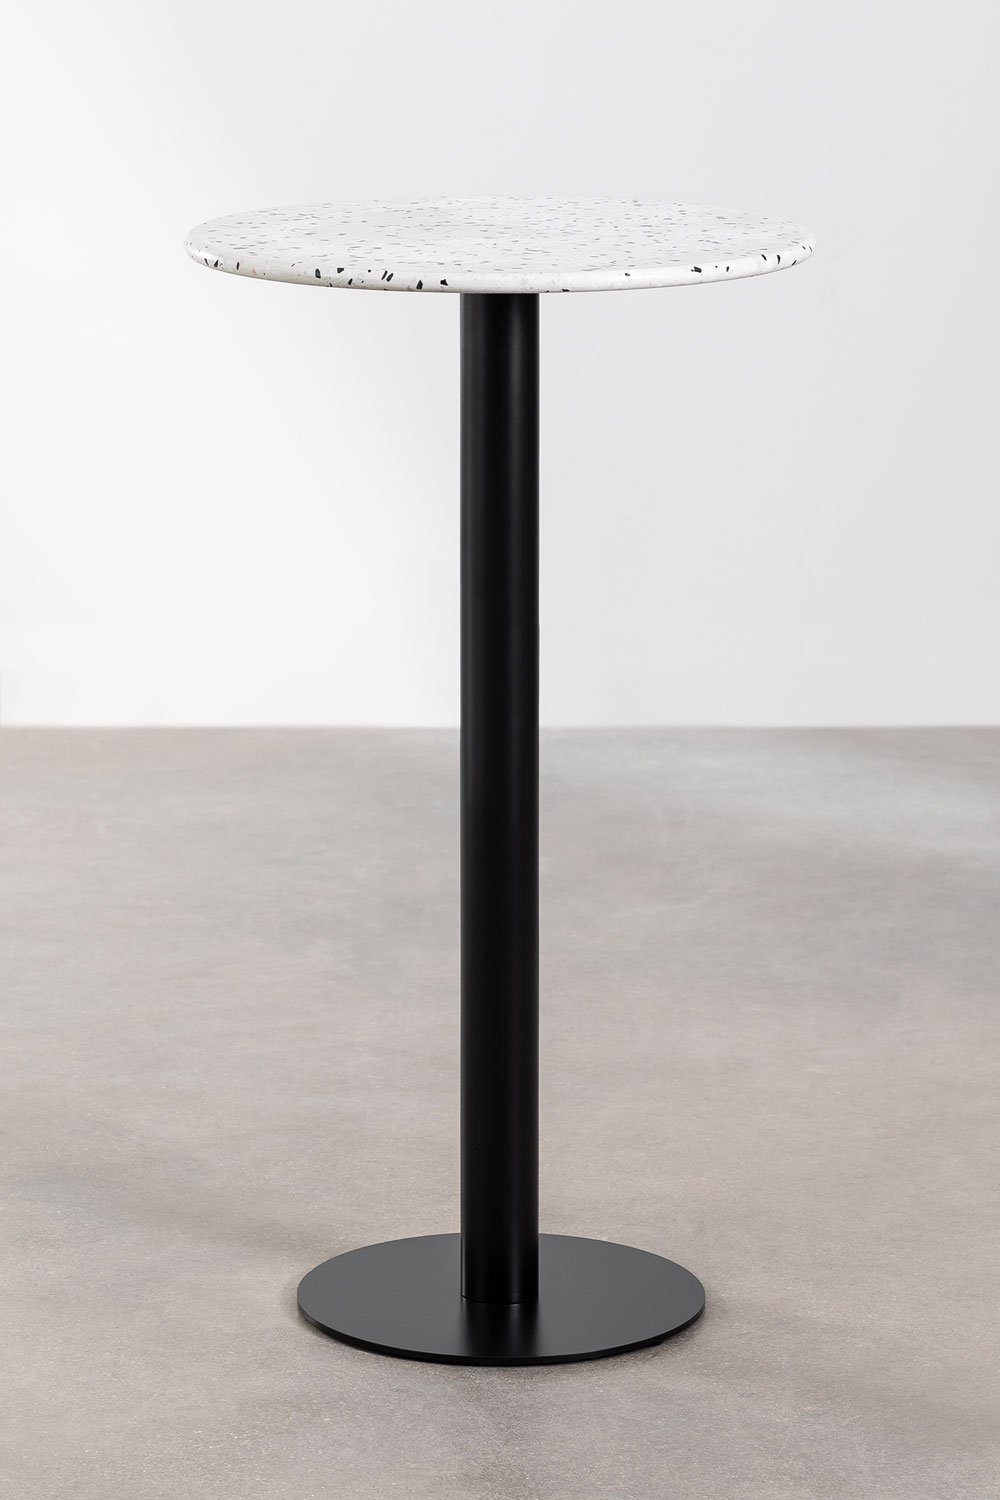 Tavolo alto da bar rotondo con effetto terrazzo (Ø60 cm) Dolce, immagine della galleria 1